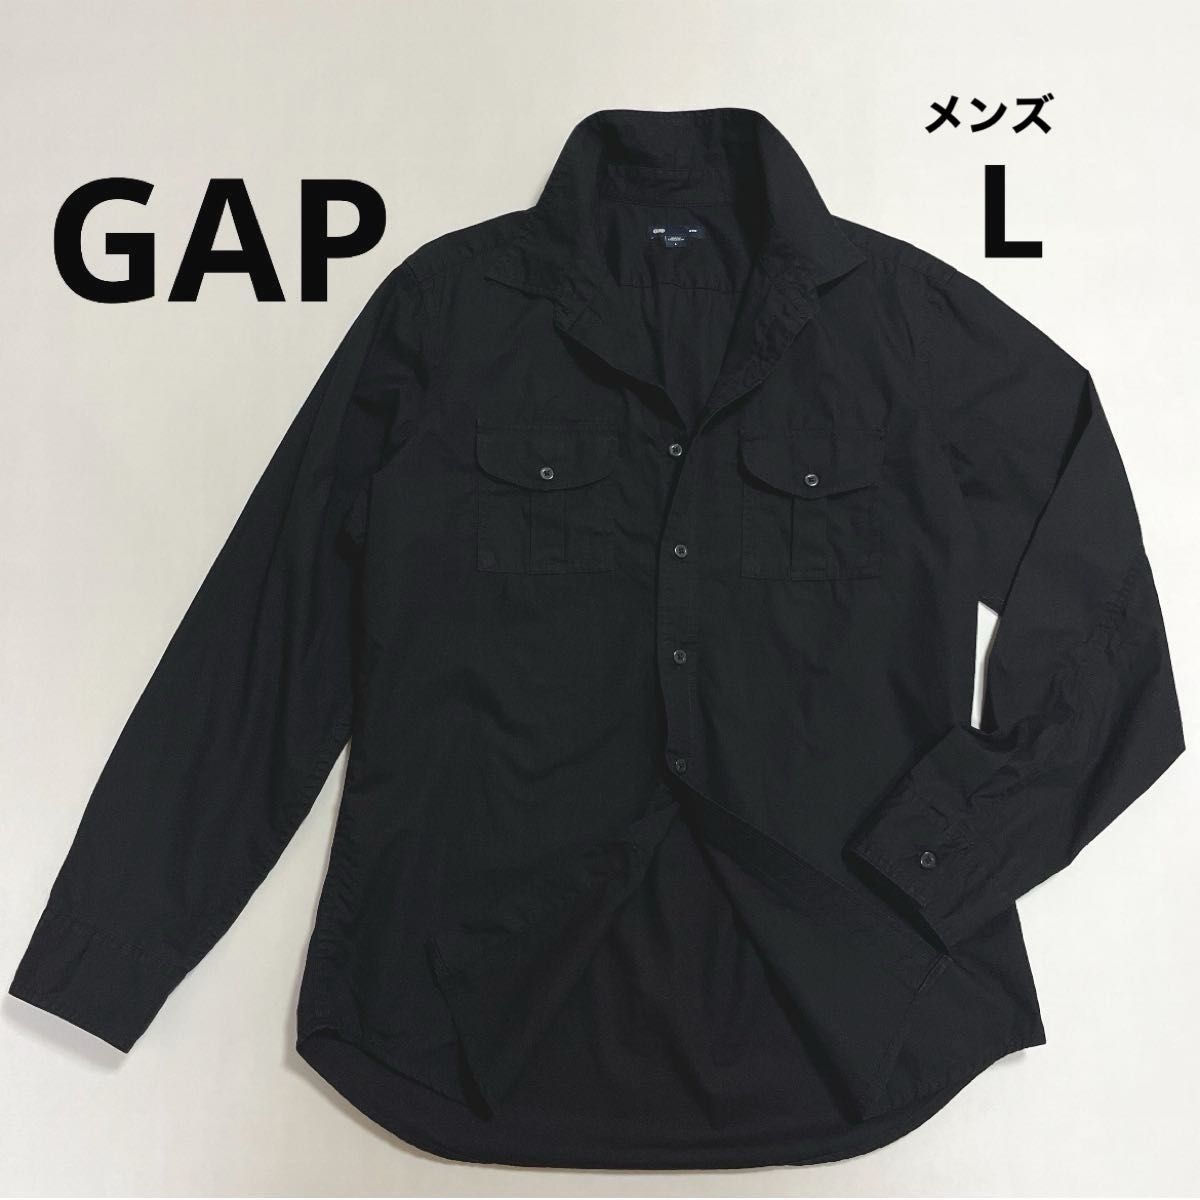 GAP ギャップ ブラック シャツ 黒  長袖 コットン 綿 100% レギュラーカラー メンズ 古着